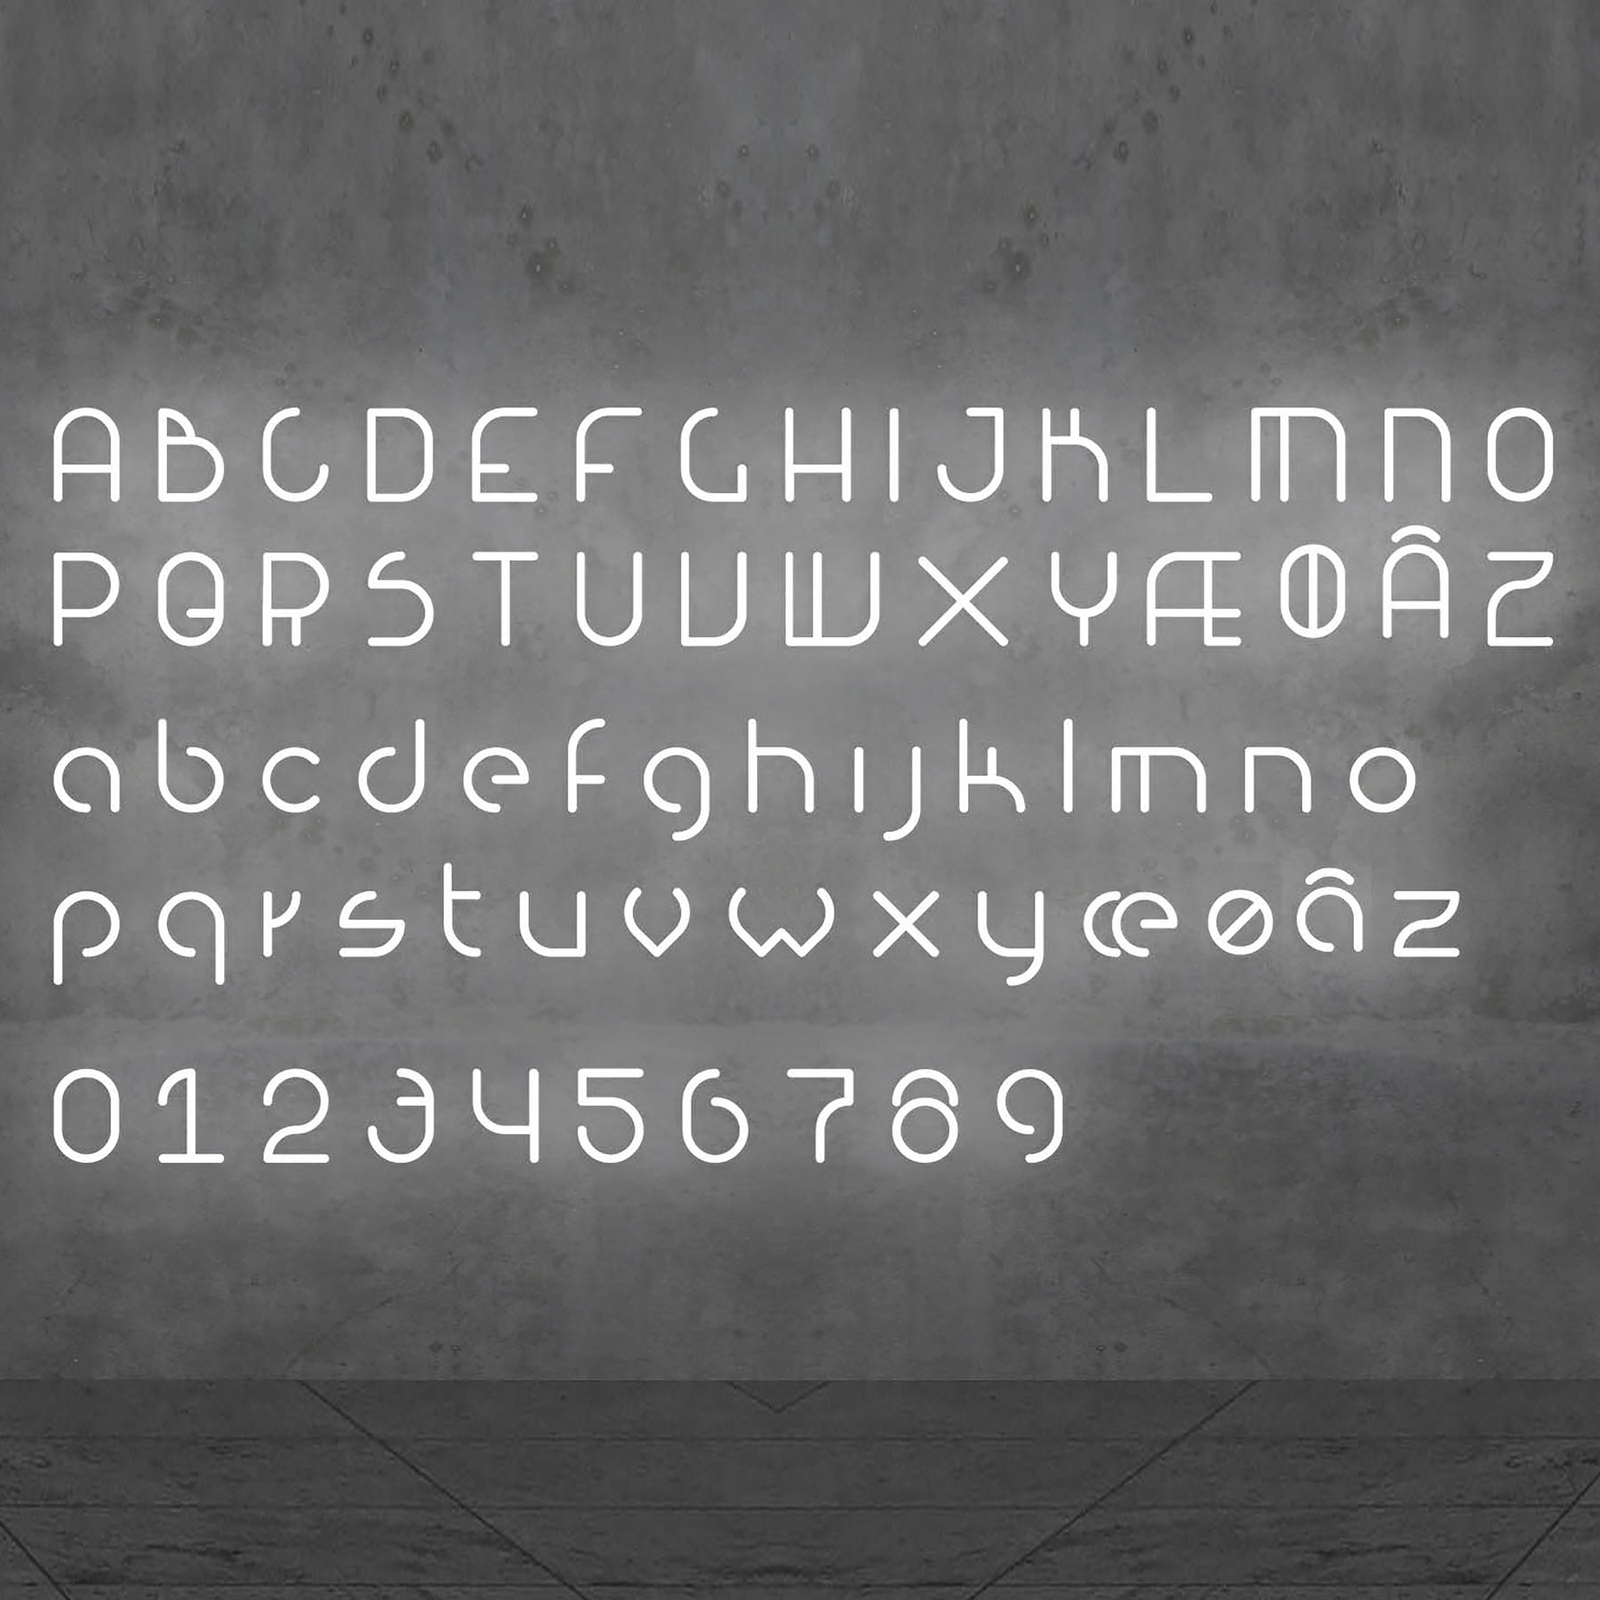 Artemide Alphabet of Light parete maiuscola Ã